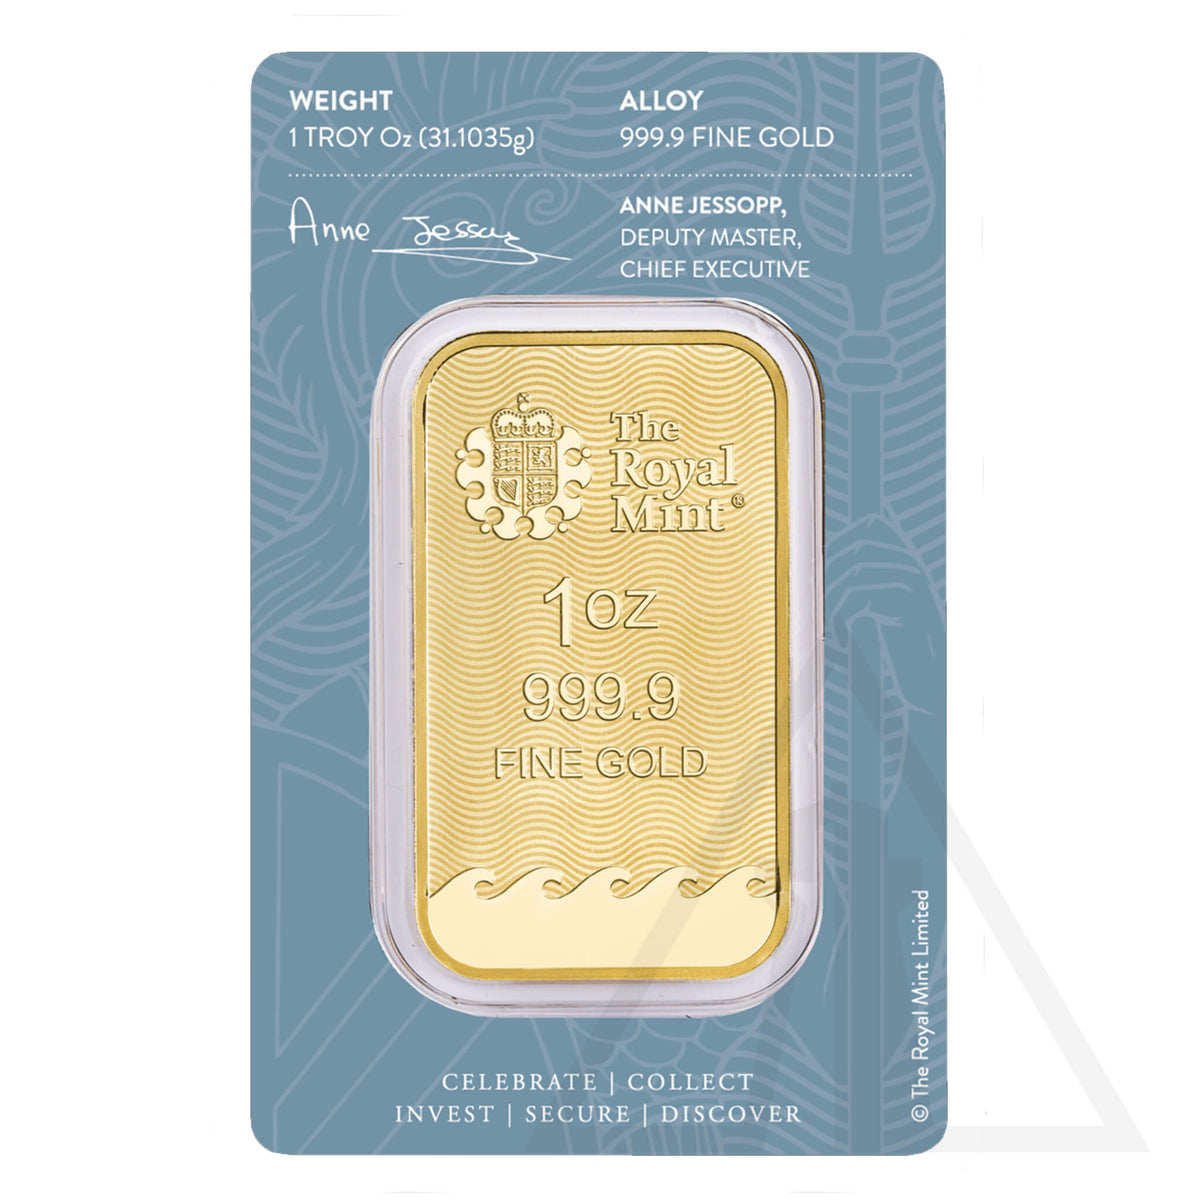 1 Oz Britannia Gold Bar | The Royal Mint